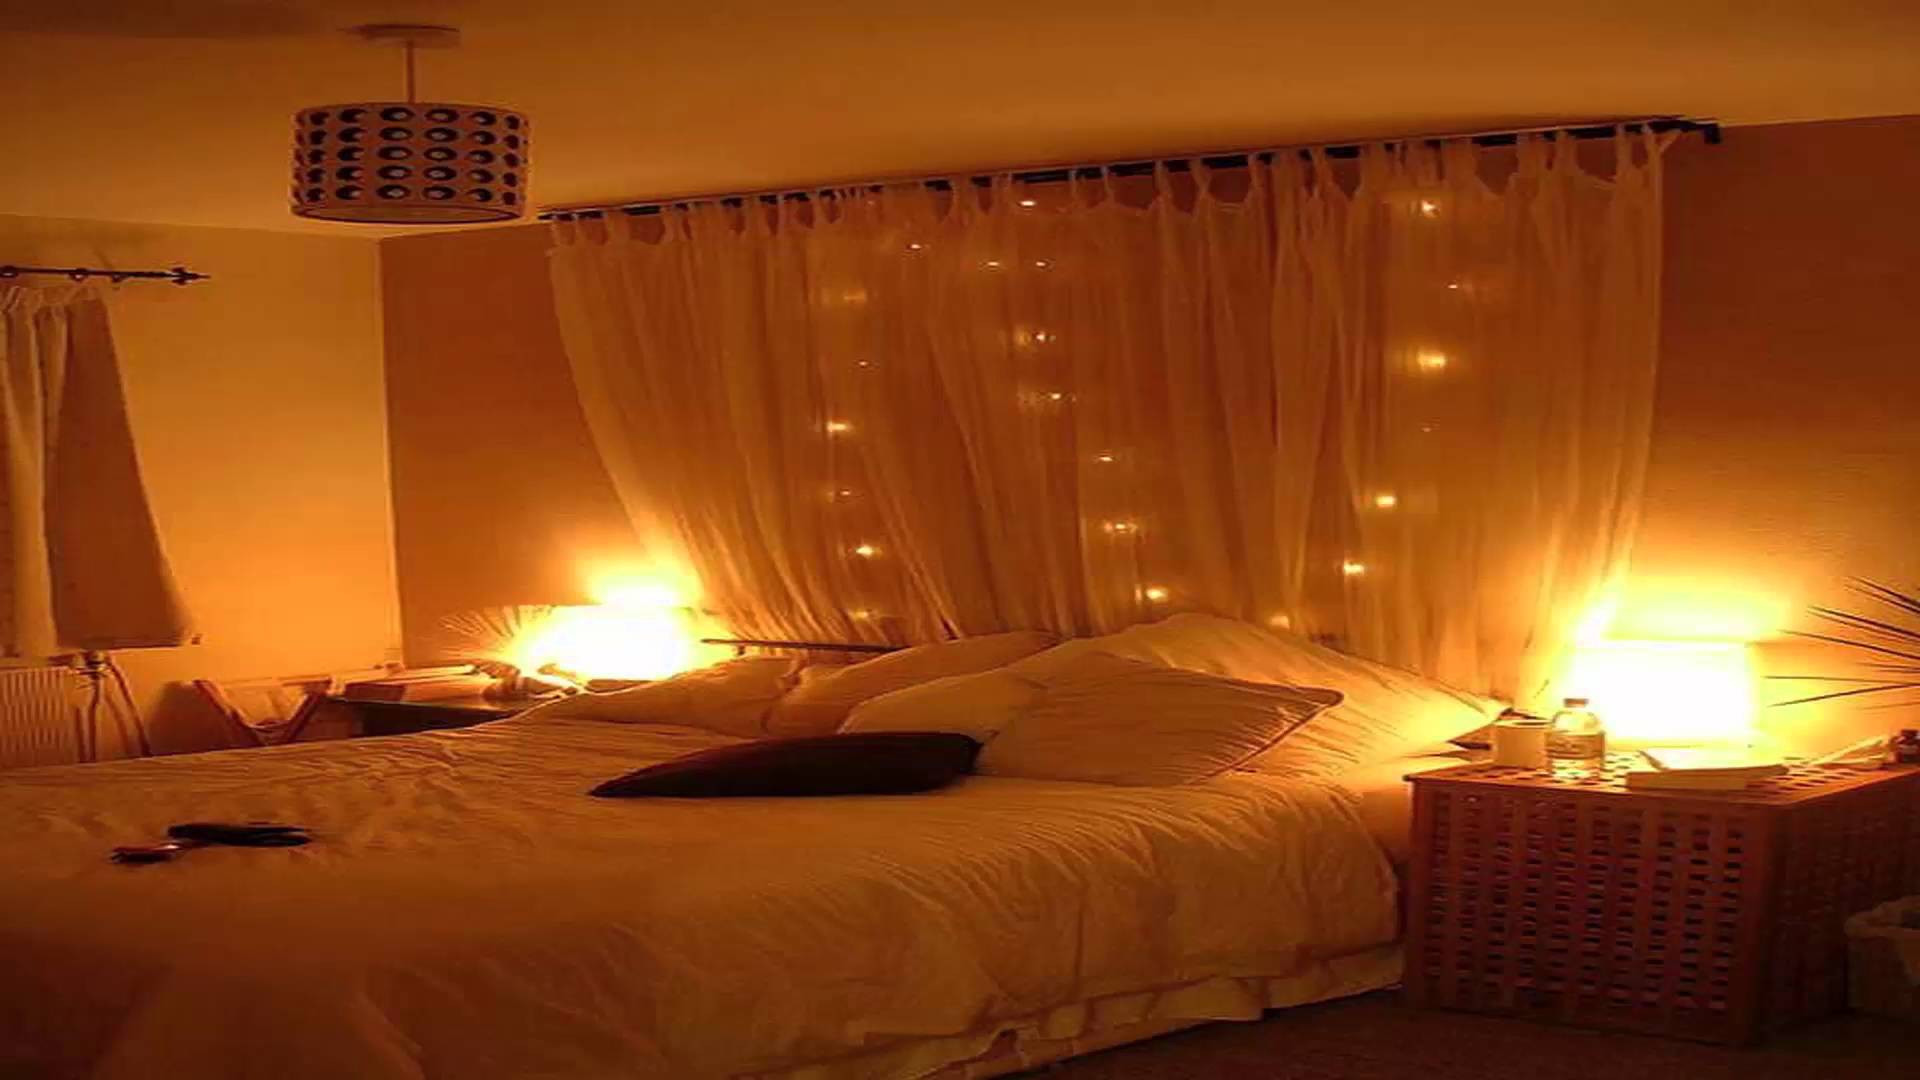 افكار رومانسية لتزيين غرف نوم في ذكرى الزواج | الراقية